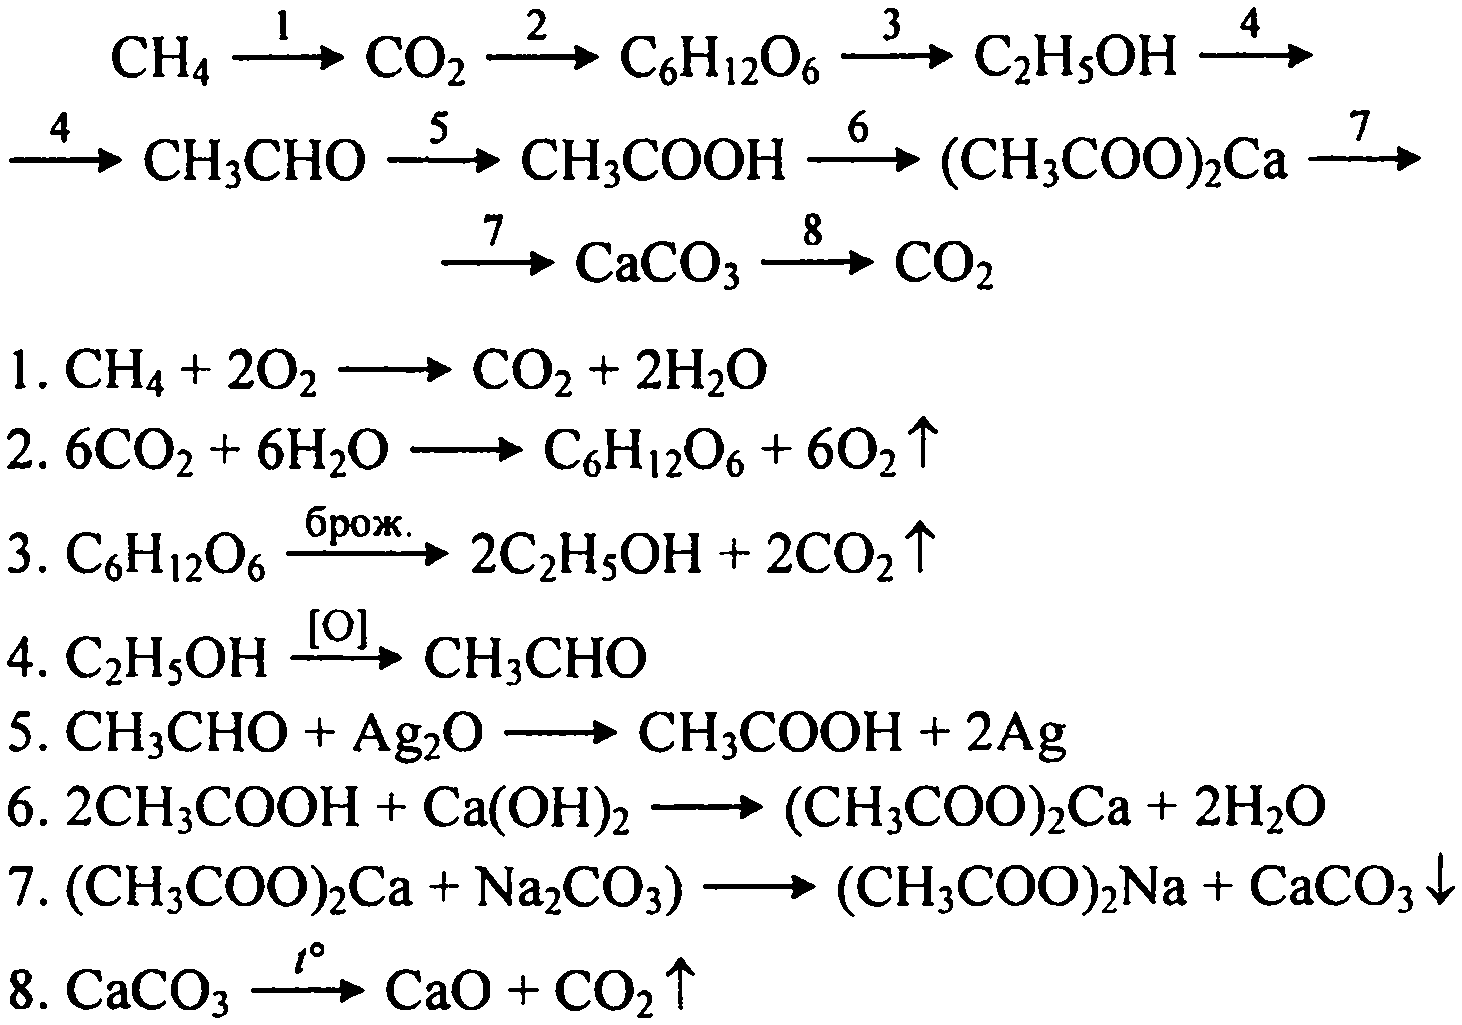 Ch 4 co2. Химическая цепочка c-ch4-co2-caco3. Цепочка превращения c2h12o6. Химическая цепочка ch4 co2. Химическая цепочка реакции c2h5oh ch3.